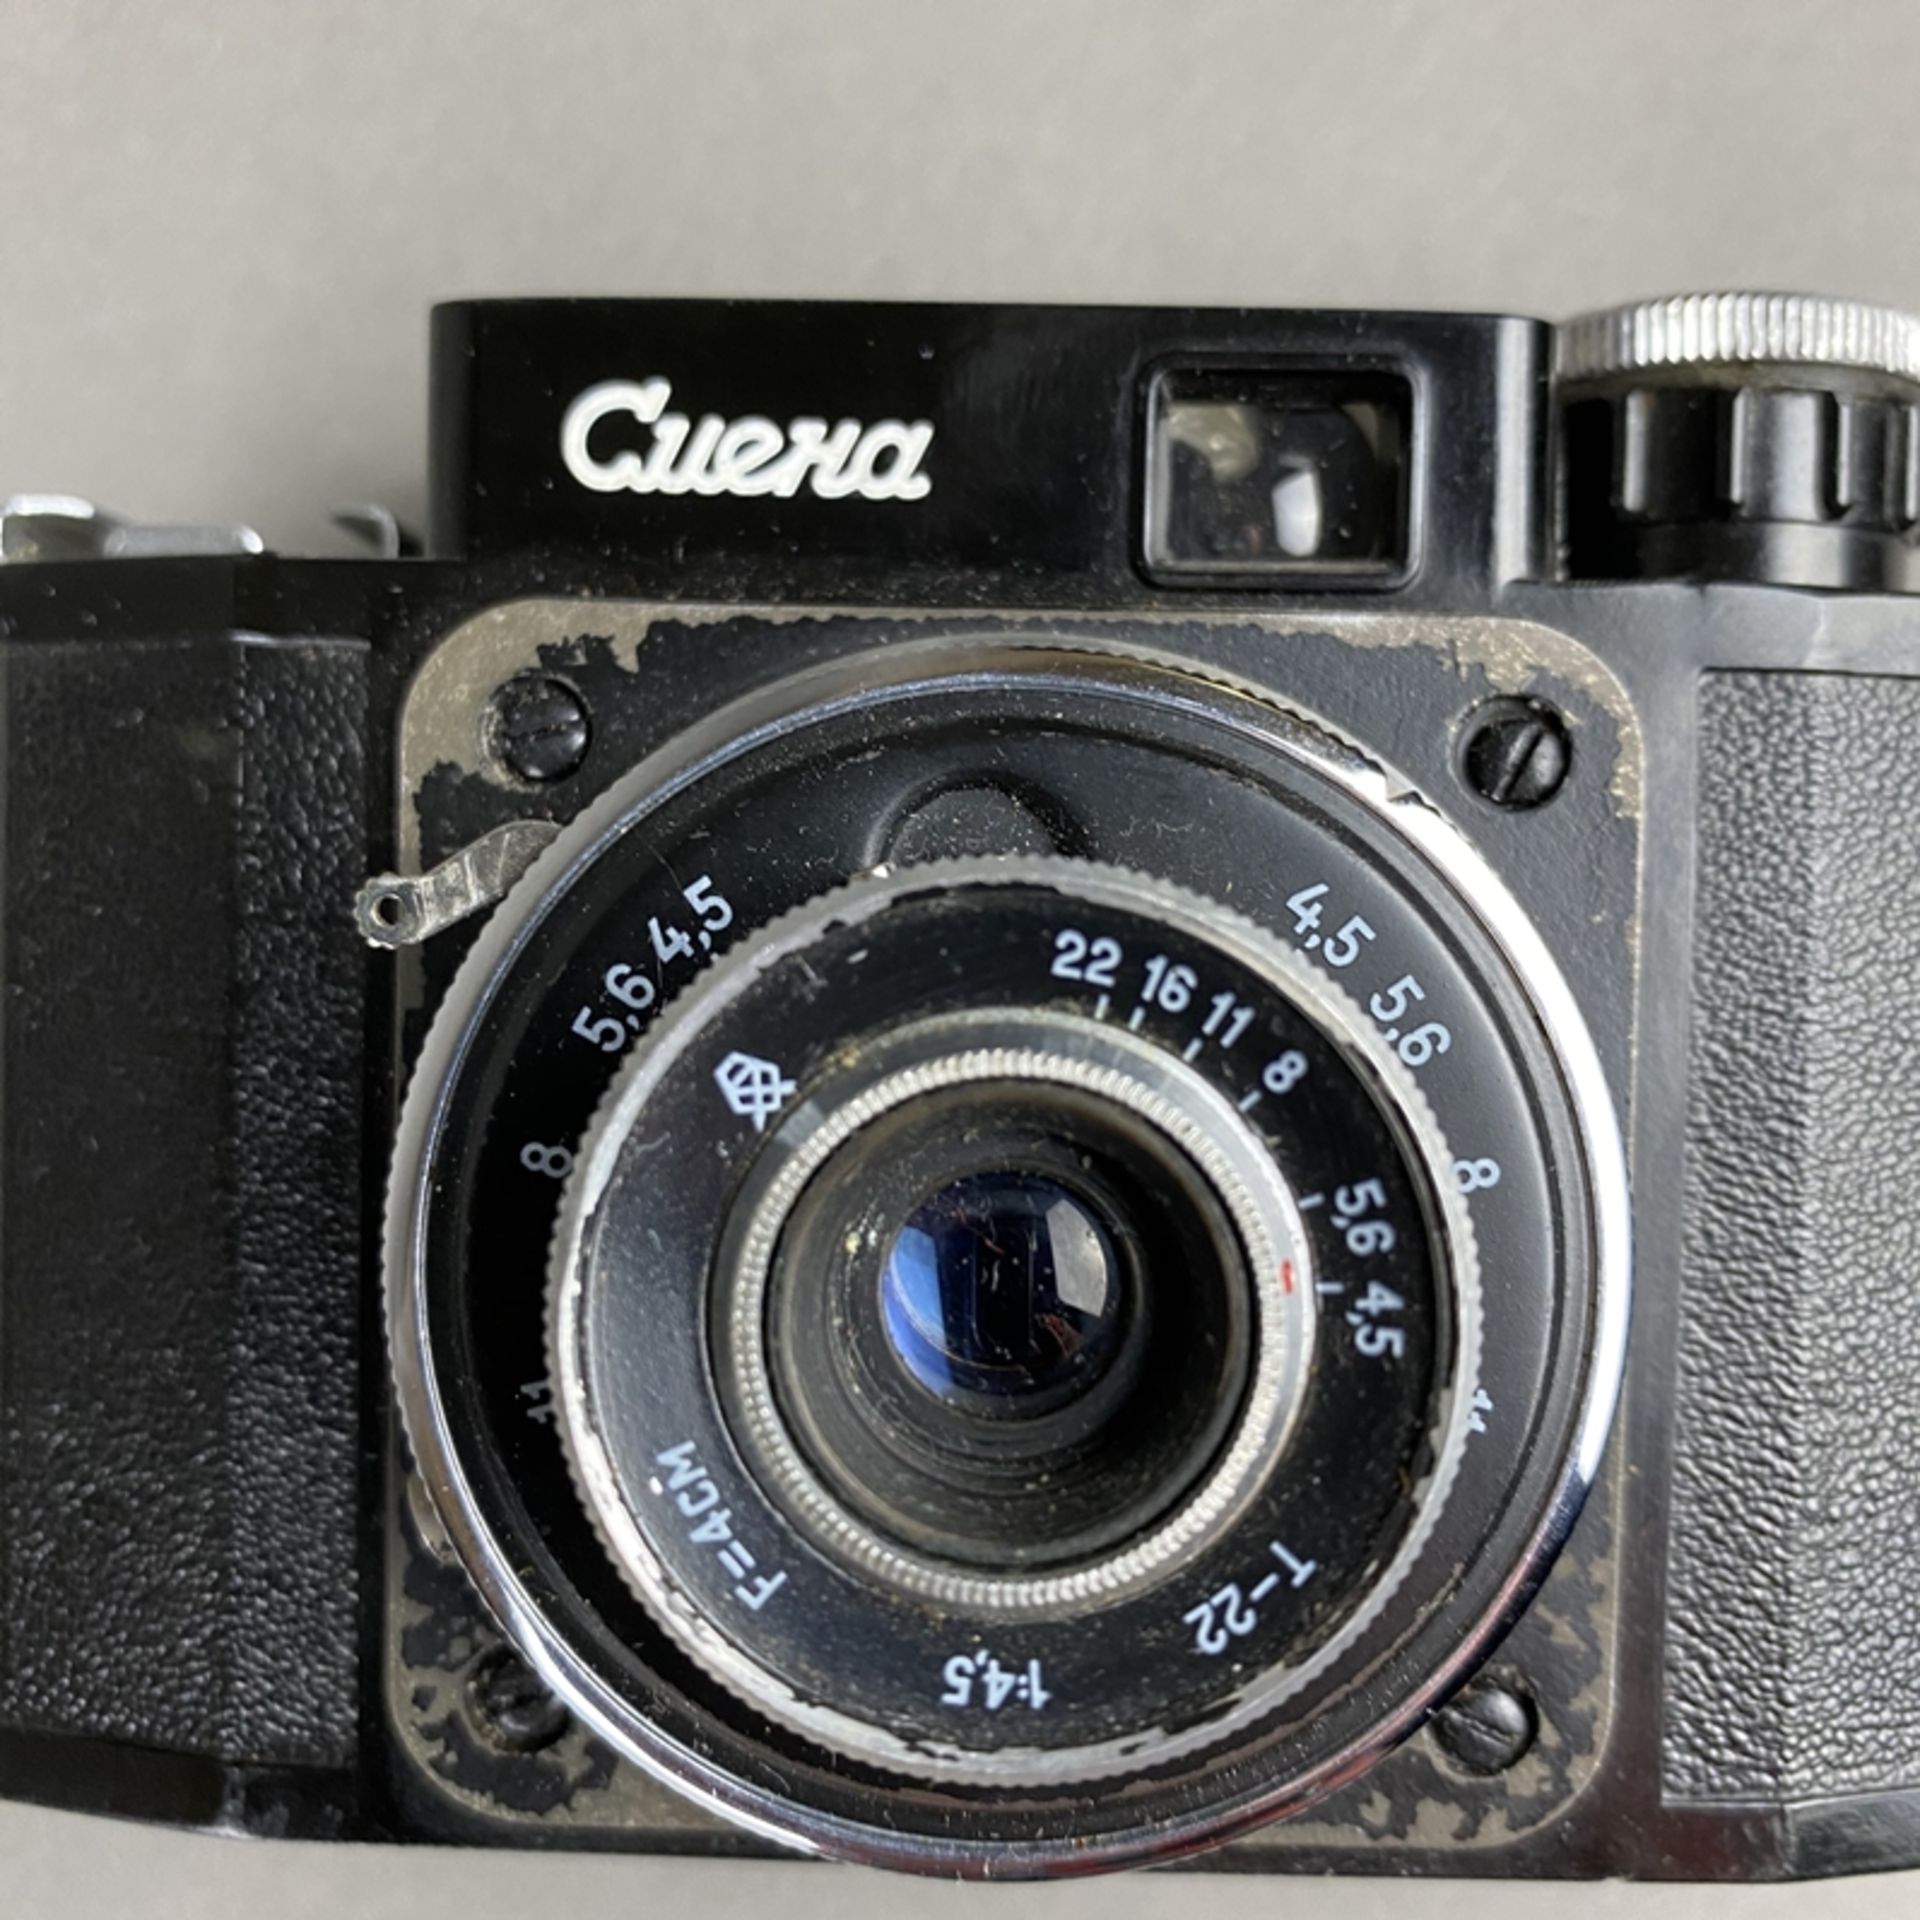 Sowjetische Vitage-Kamera Smena - 1952-60, UdSSR, Bakelitgehäuse Nr.528242, gebrauchter Zustand, - Bild 2 aus 5